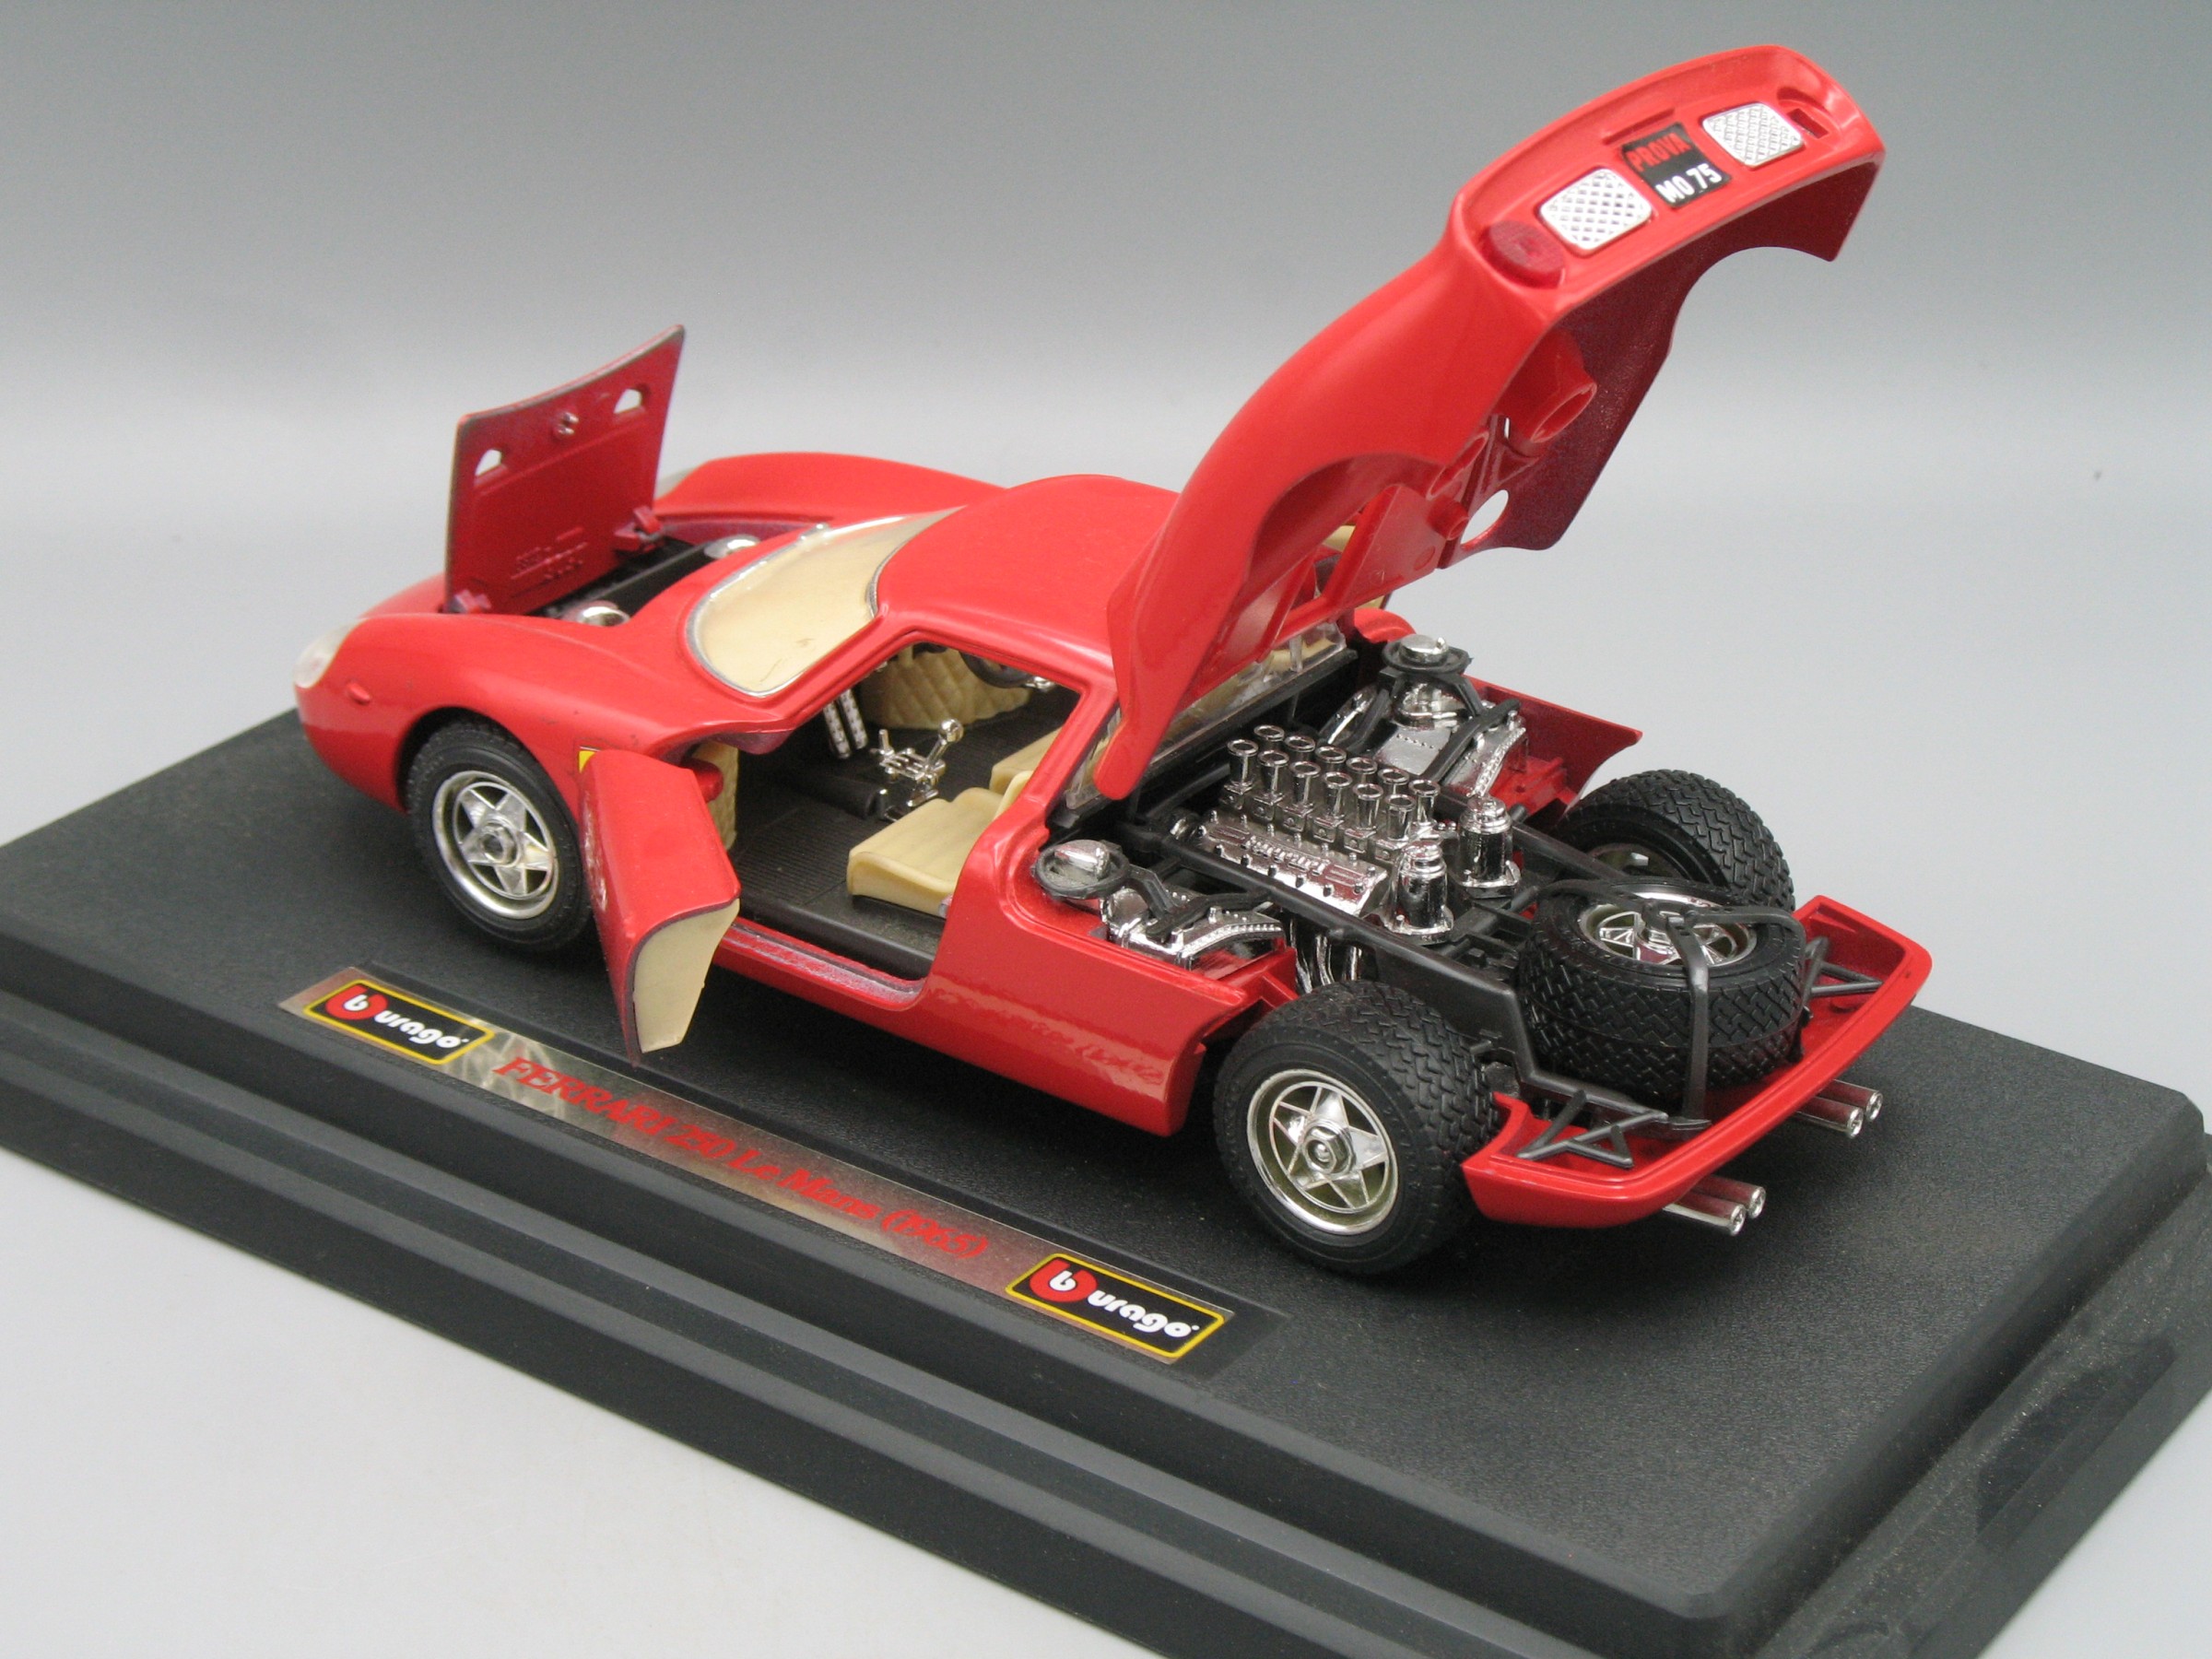 Burago Ferrari 250 Le Mans 1965 Echelle 1:18 Voiture Miniature